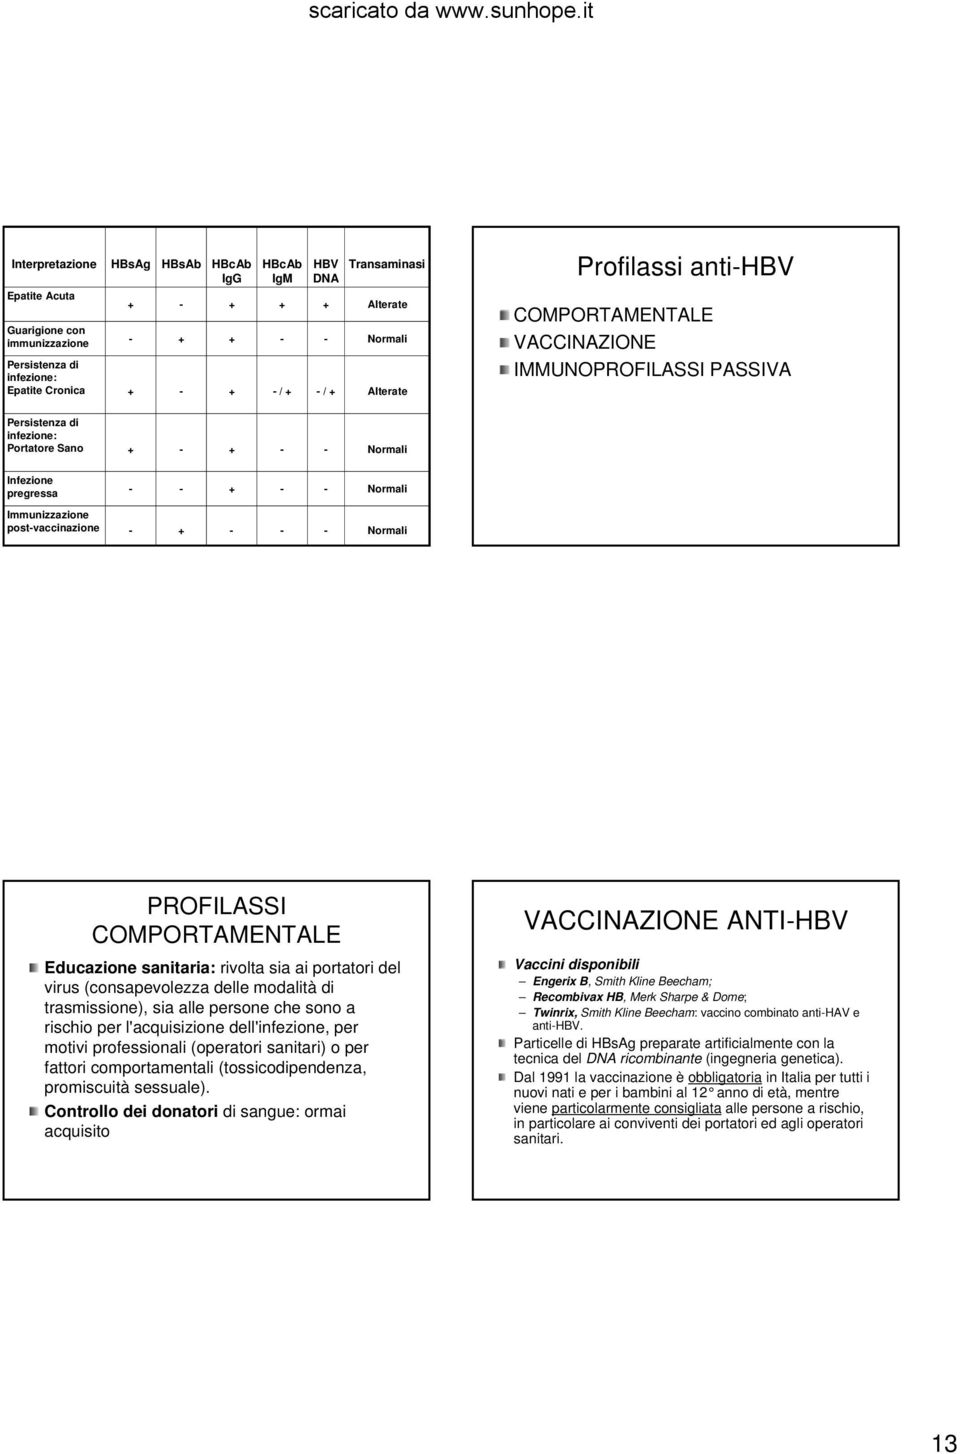 COMPORTAMENTALE VACCINAZIONE IMMUNOPROFILASSI PASSIVA Persistenza di infezione: Portatore Sano + + Normali Infezione pregressa + Normali Immunizzazione postvaccinazione + Normali PROFILASSI